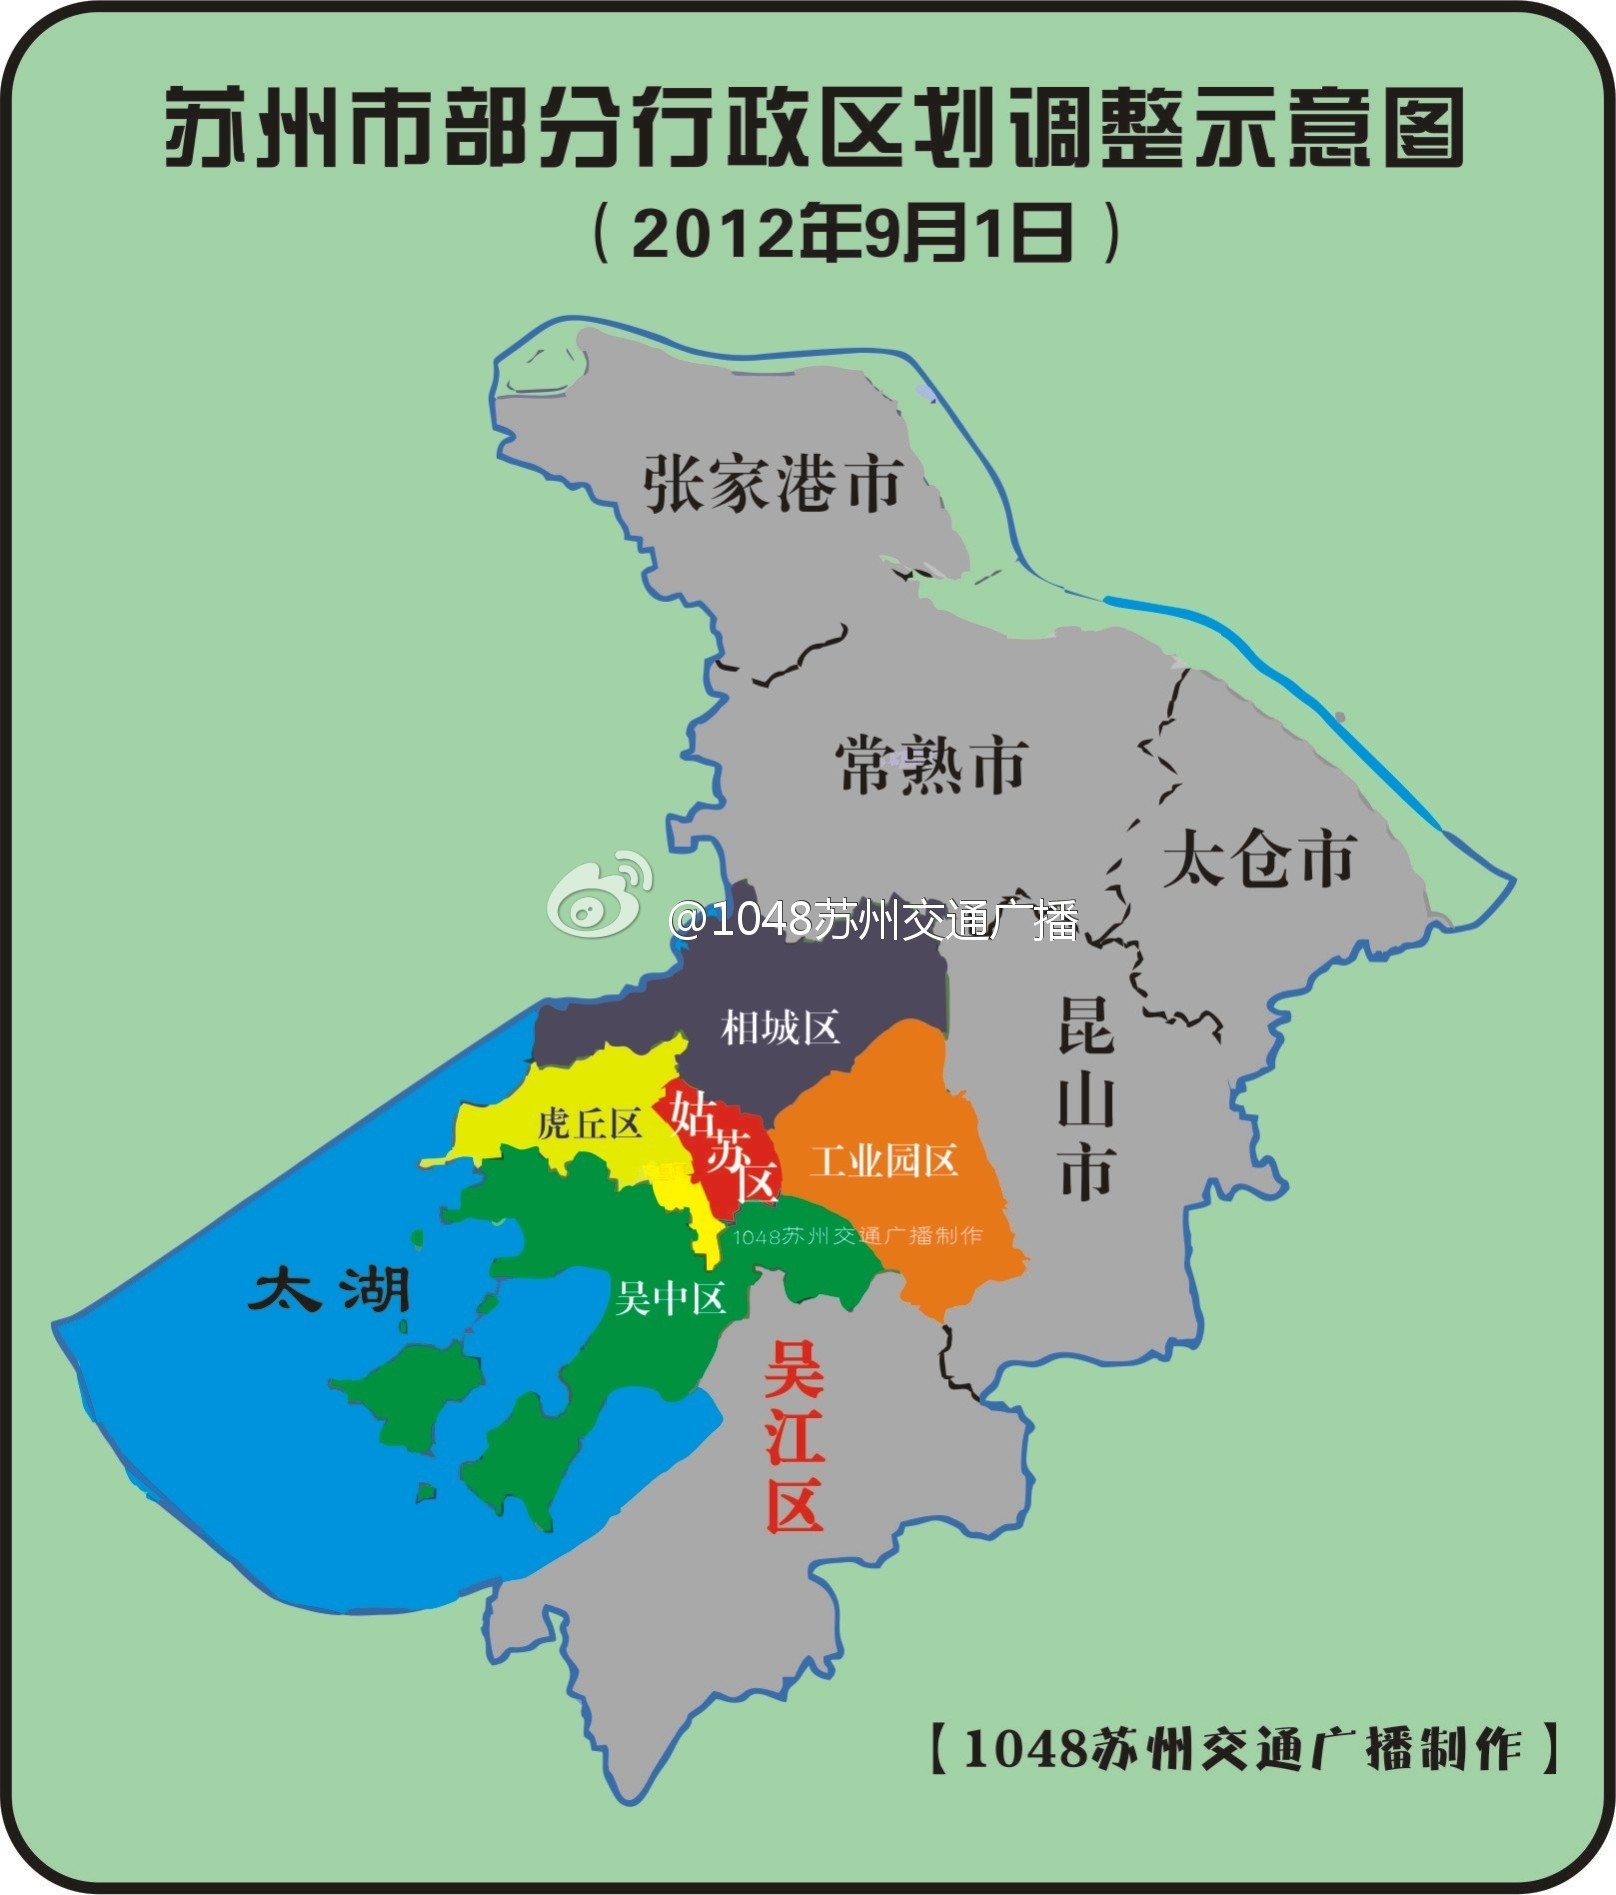 苏州区域划分